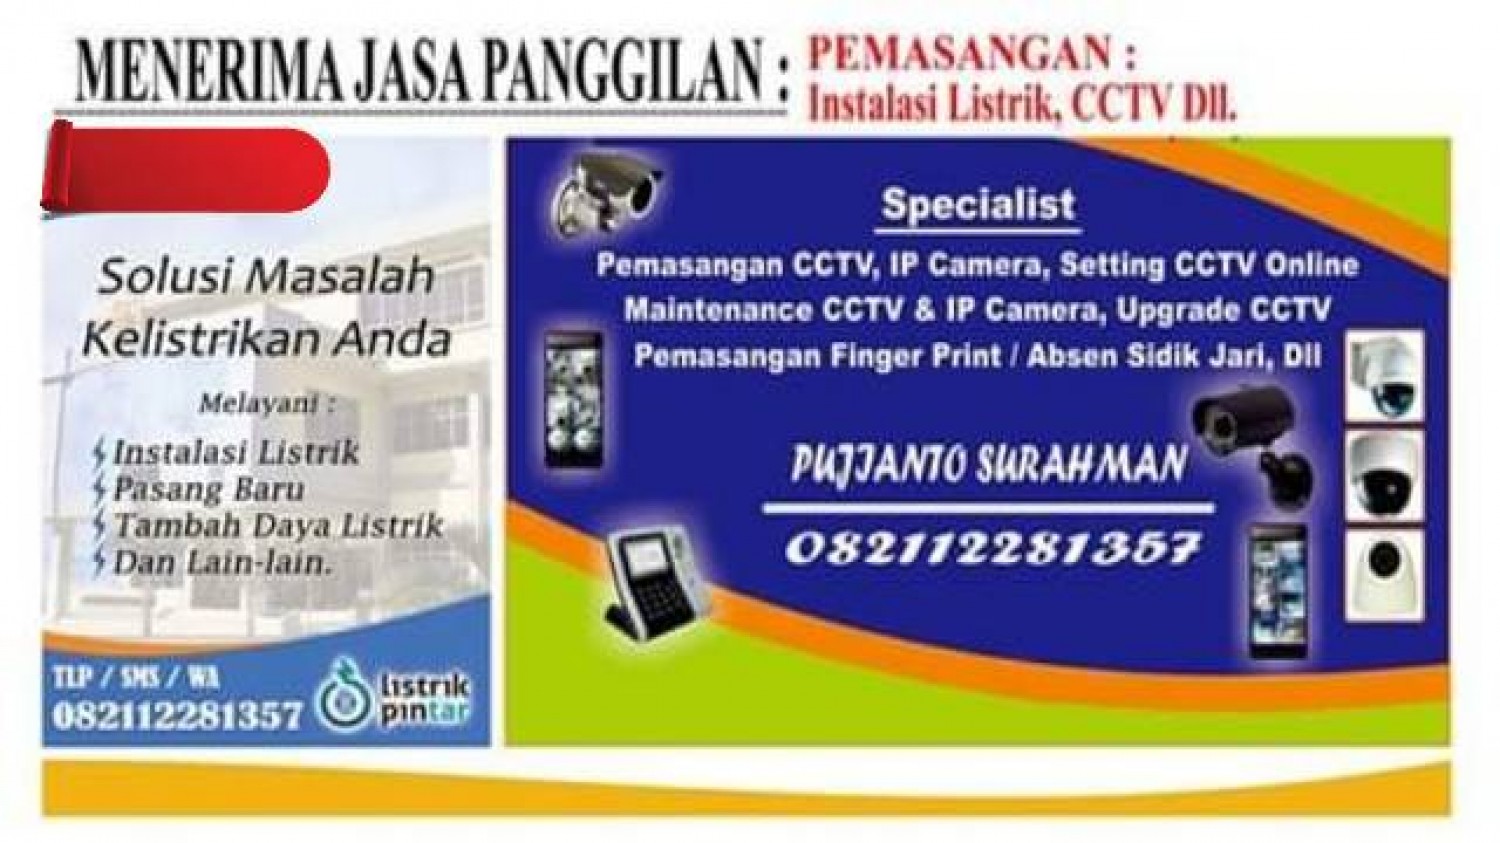 Teknisi Pemasangan Setting Online CCTV,Maintenance CCTV,Perbaikan CCTV Pekanbaru Kampar,Bangkinang